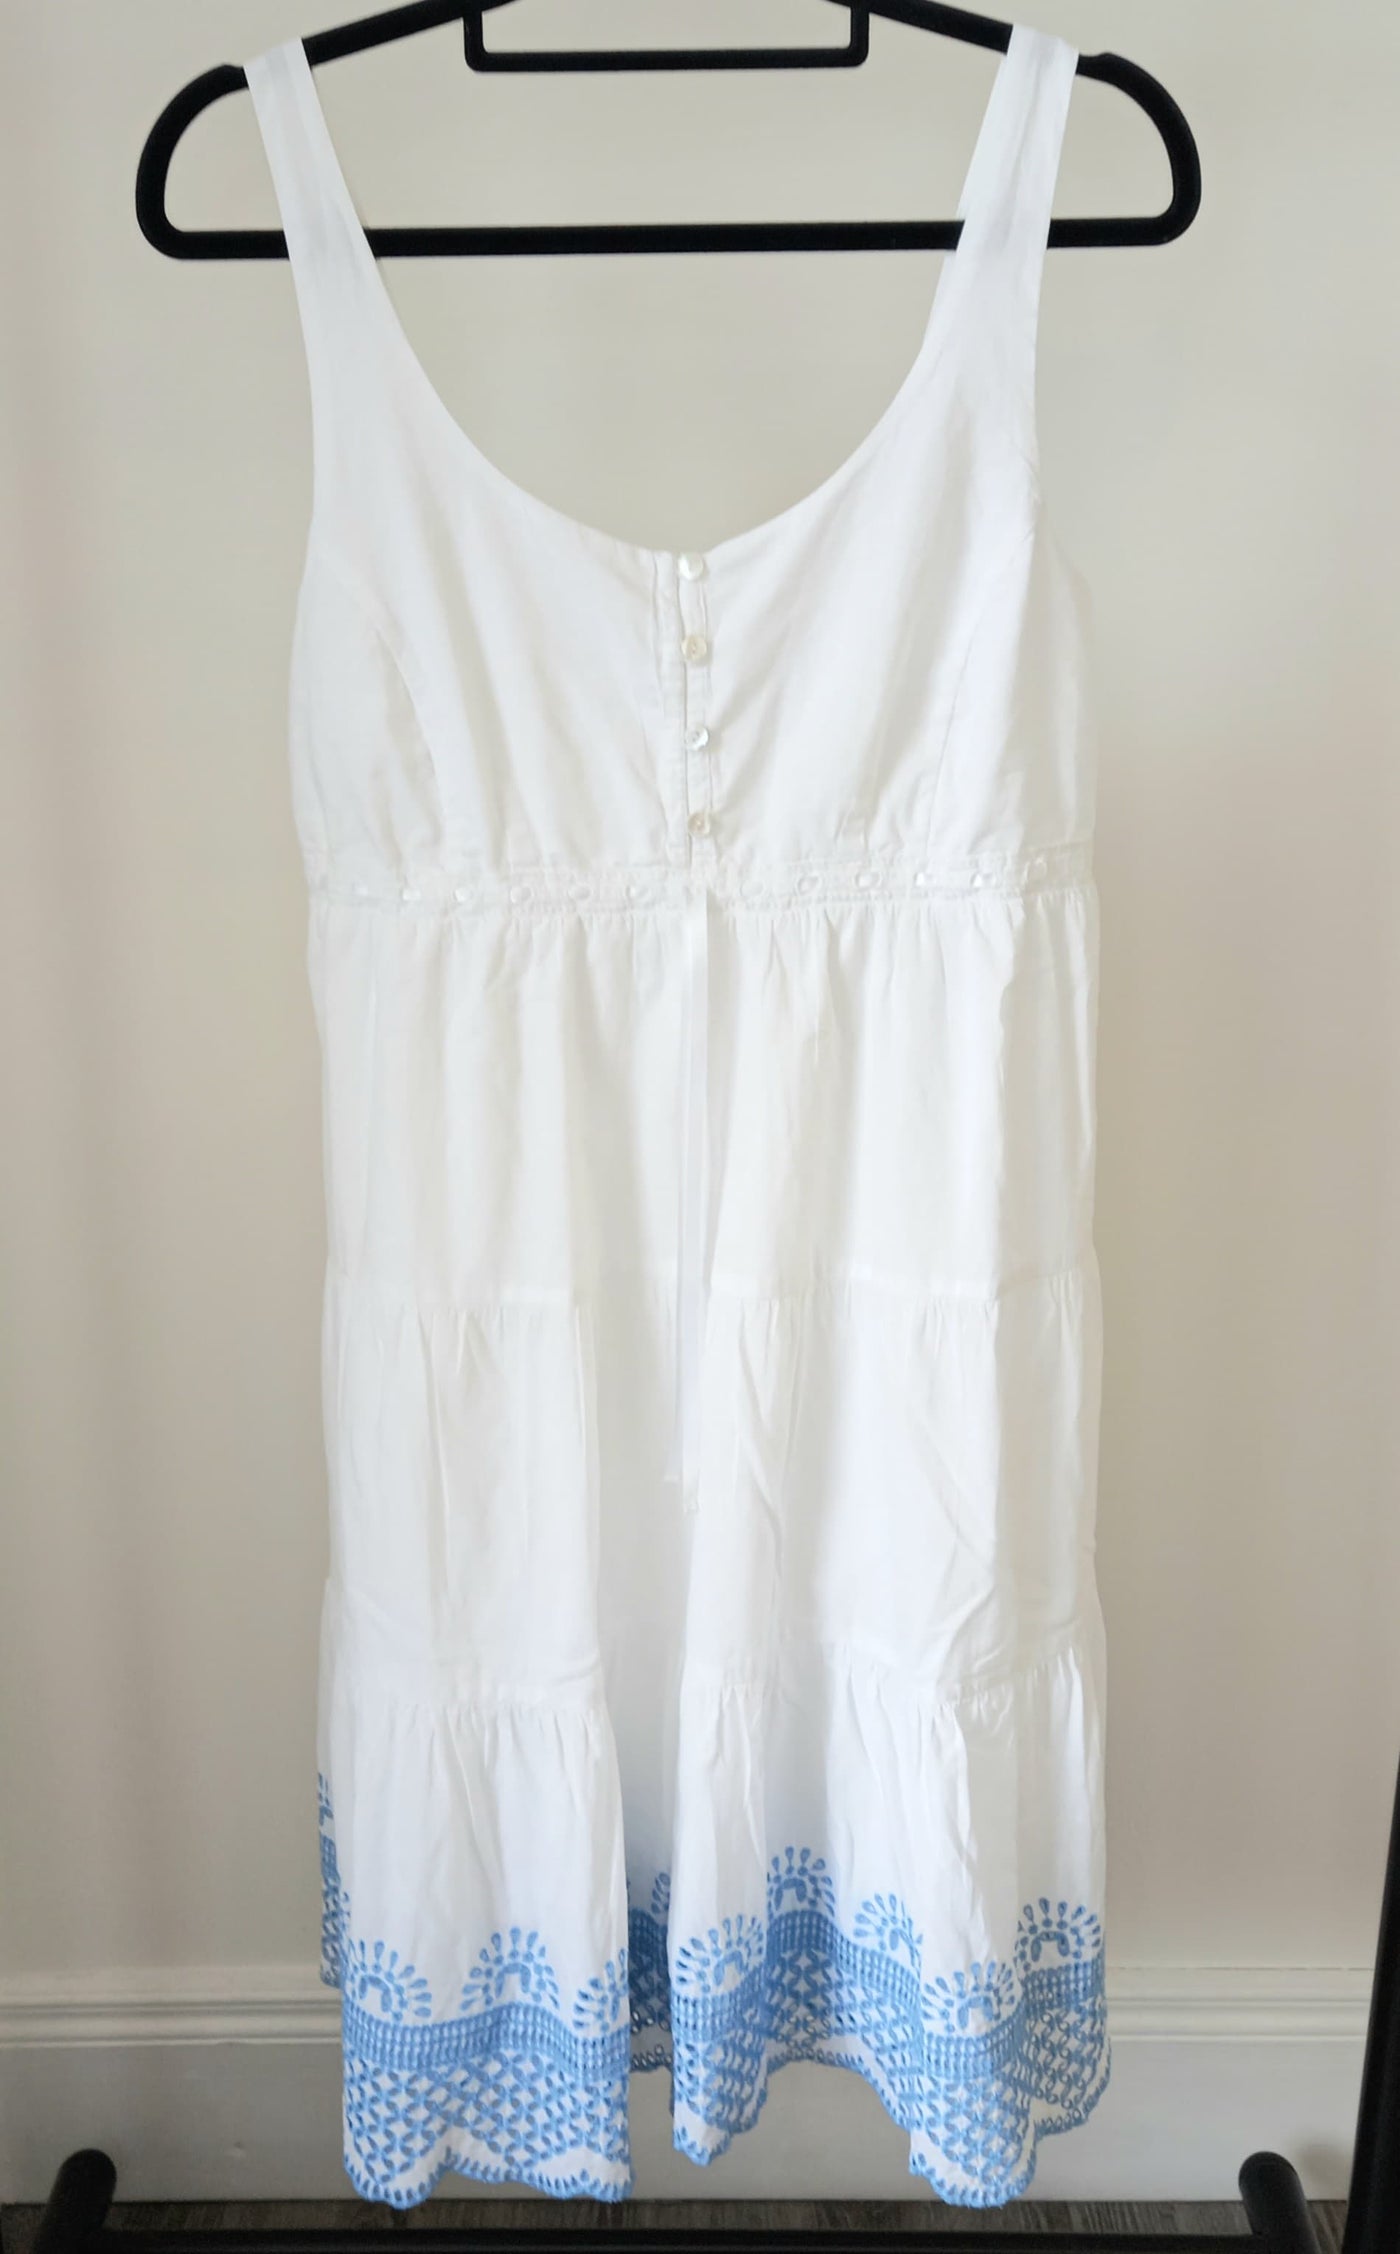 Seraphine White Camisole Summer Dress - Size 6